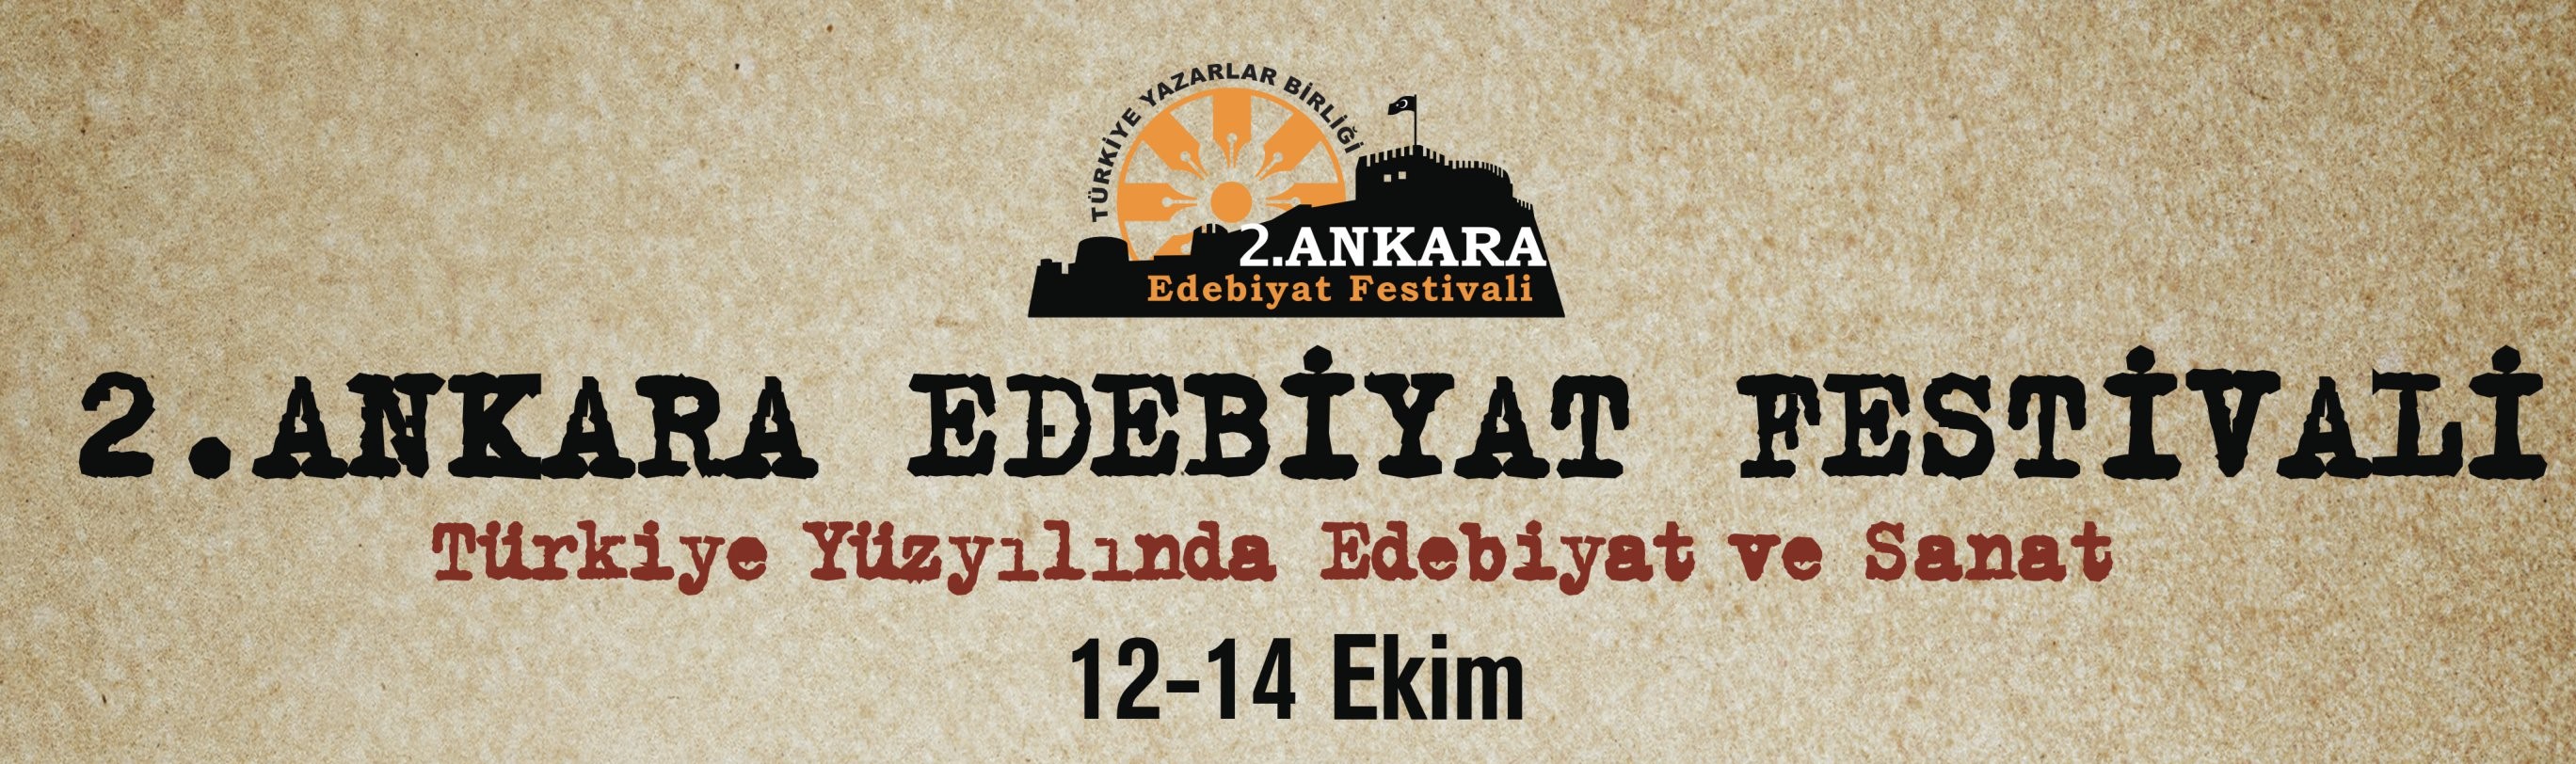 Ankara Edebiyat Festivali Başlıyor